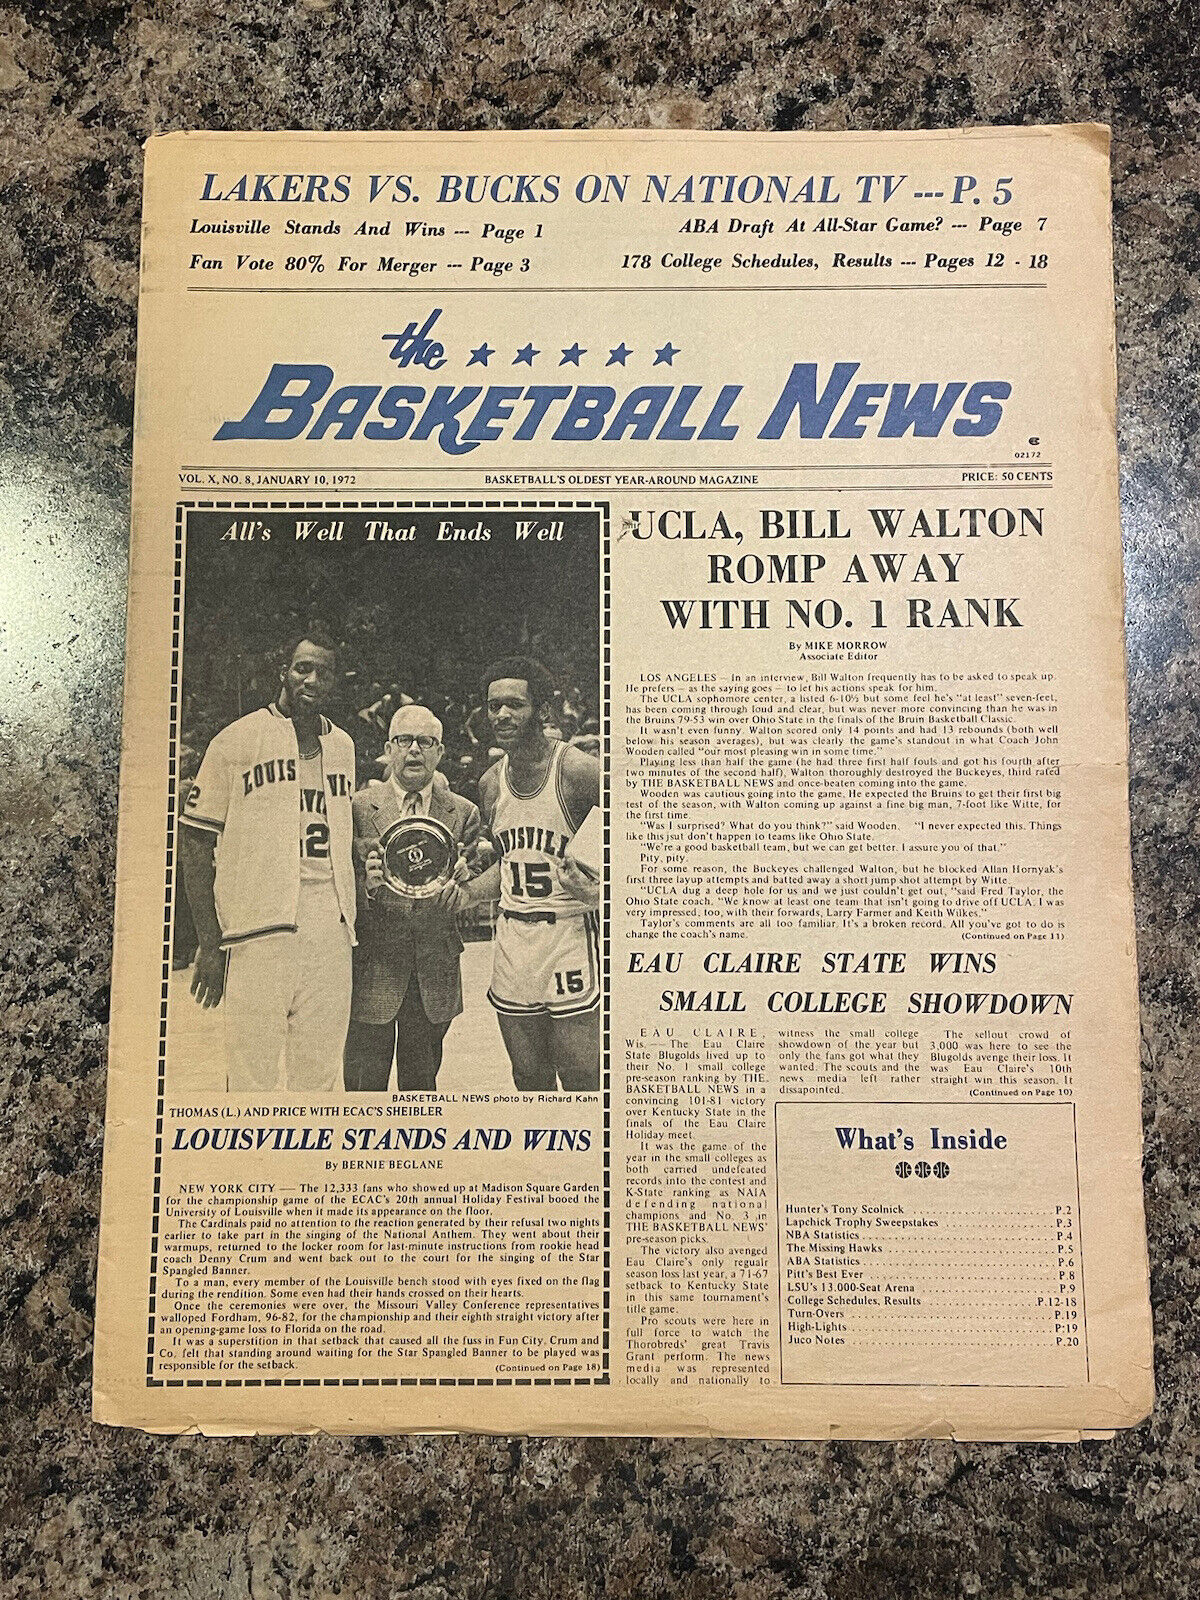 1972 Basketball News Newspaper.  Louisville Cardinals. Denny Crum